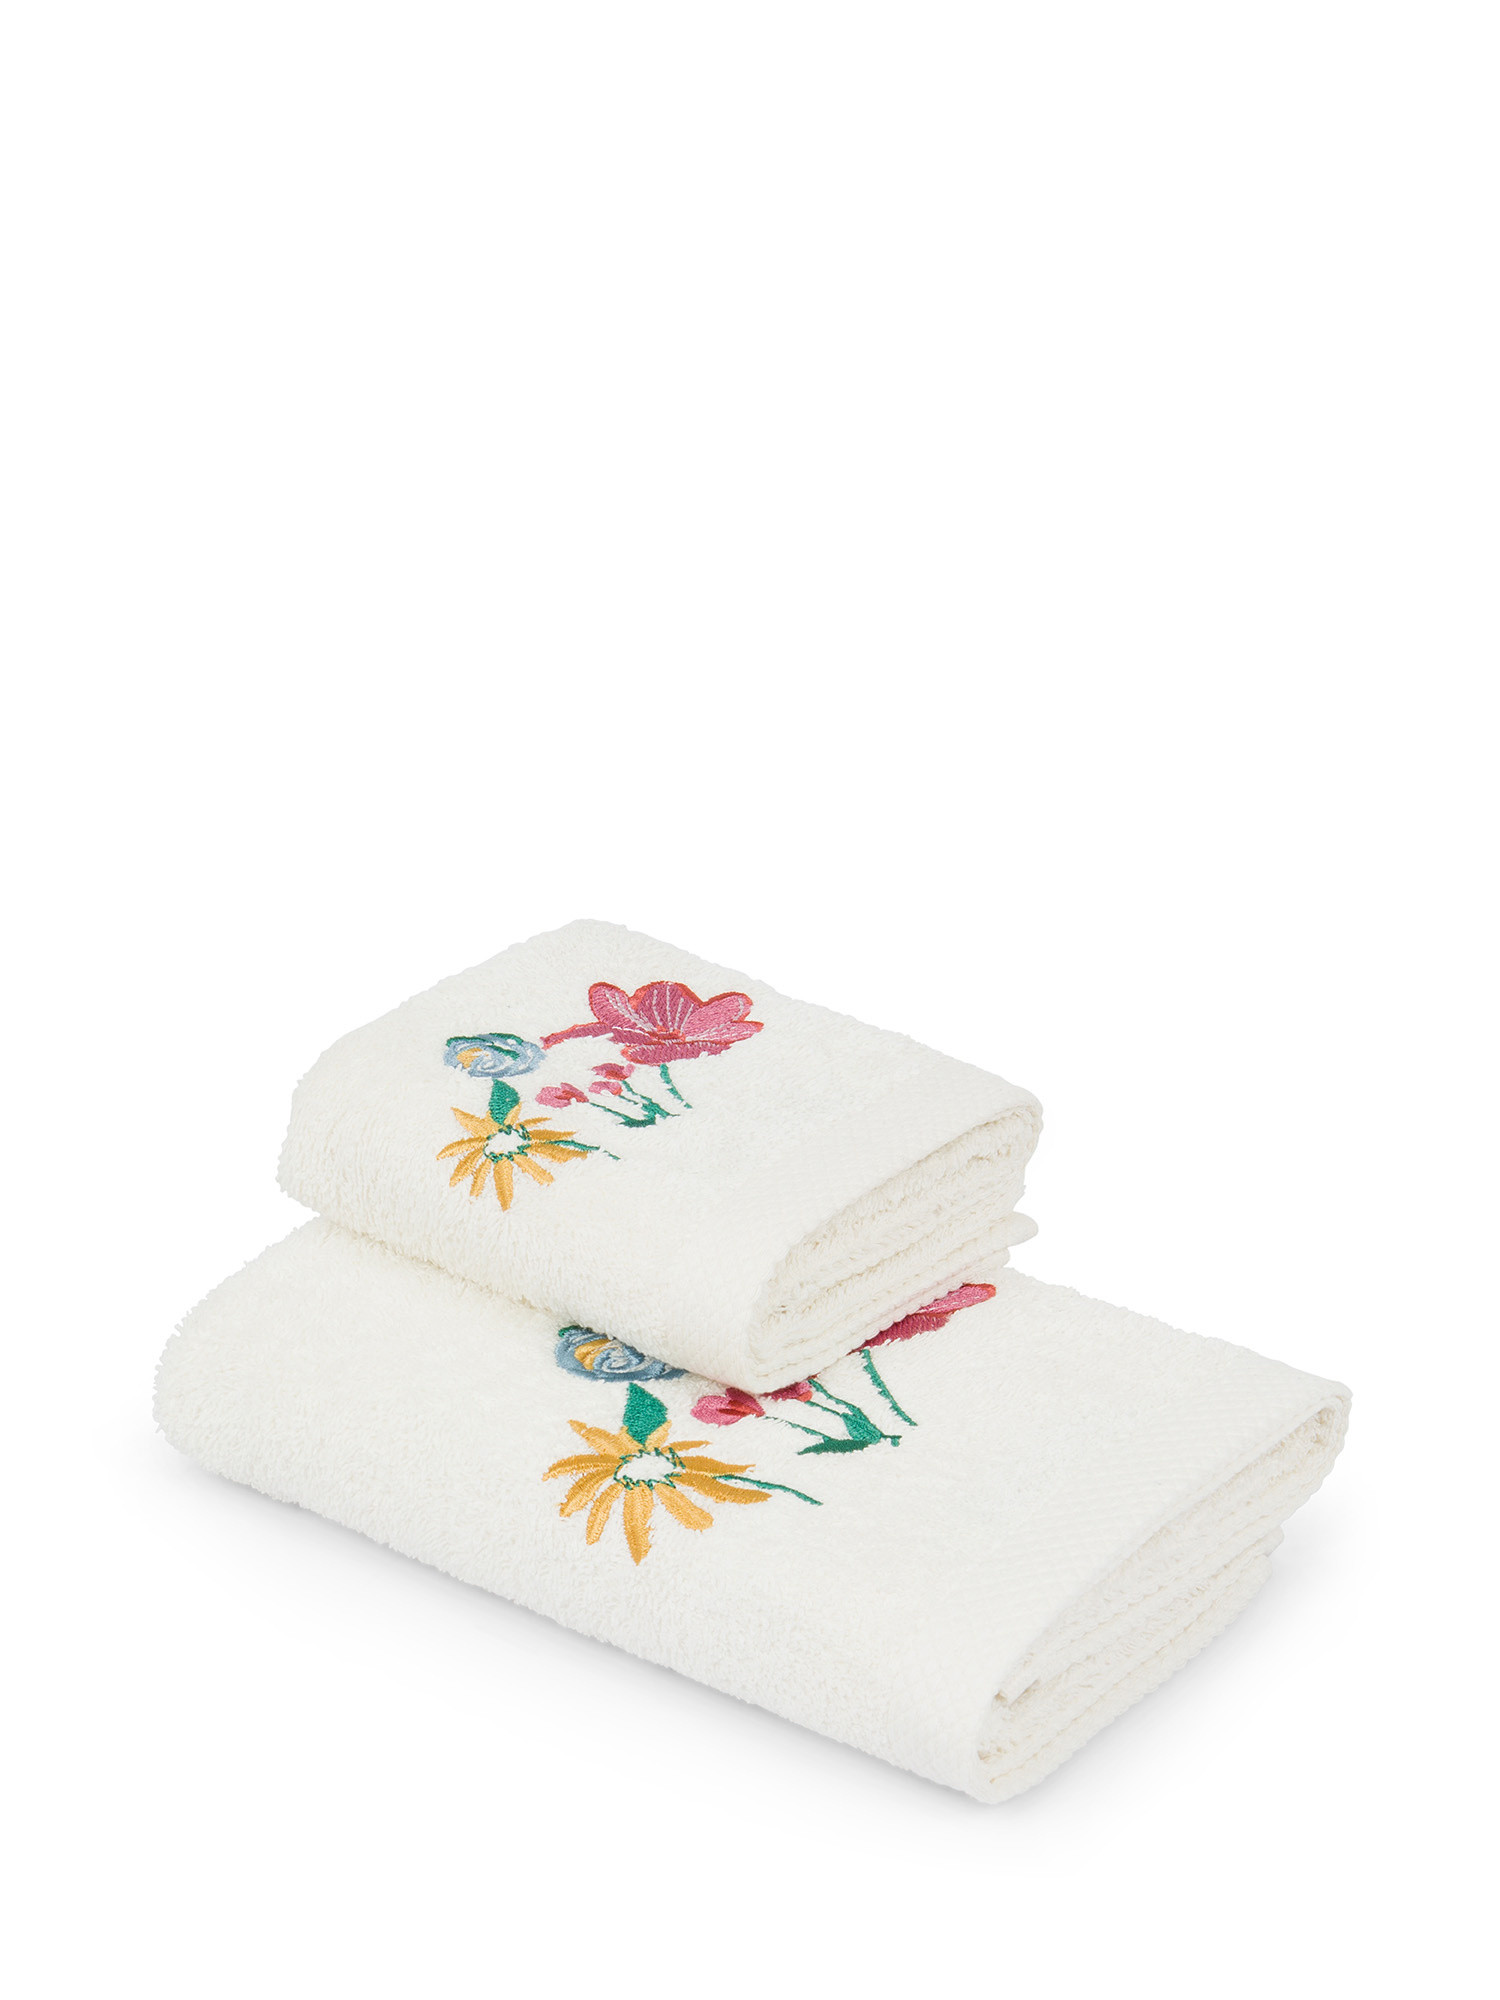 Asciugamano in spugna di cotone con ricamo floreale, Multicolor, large image number 0